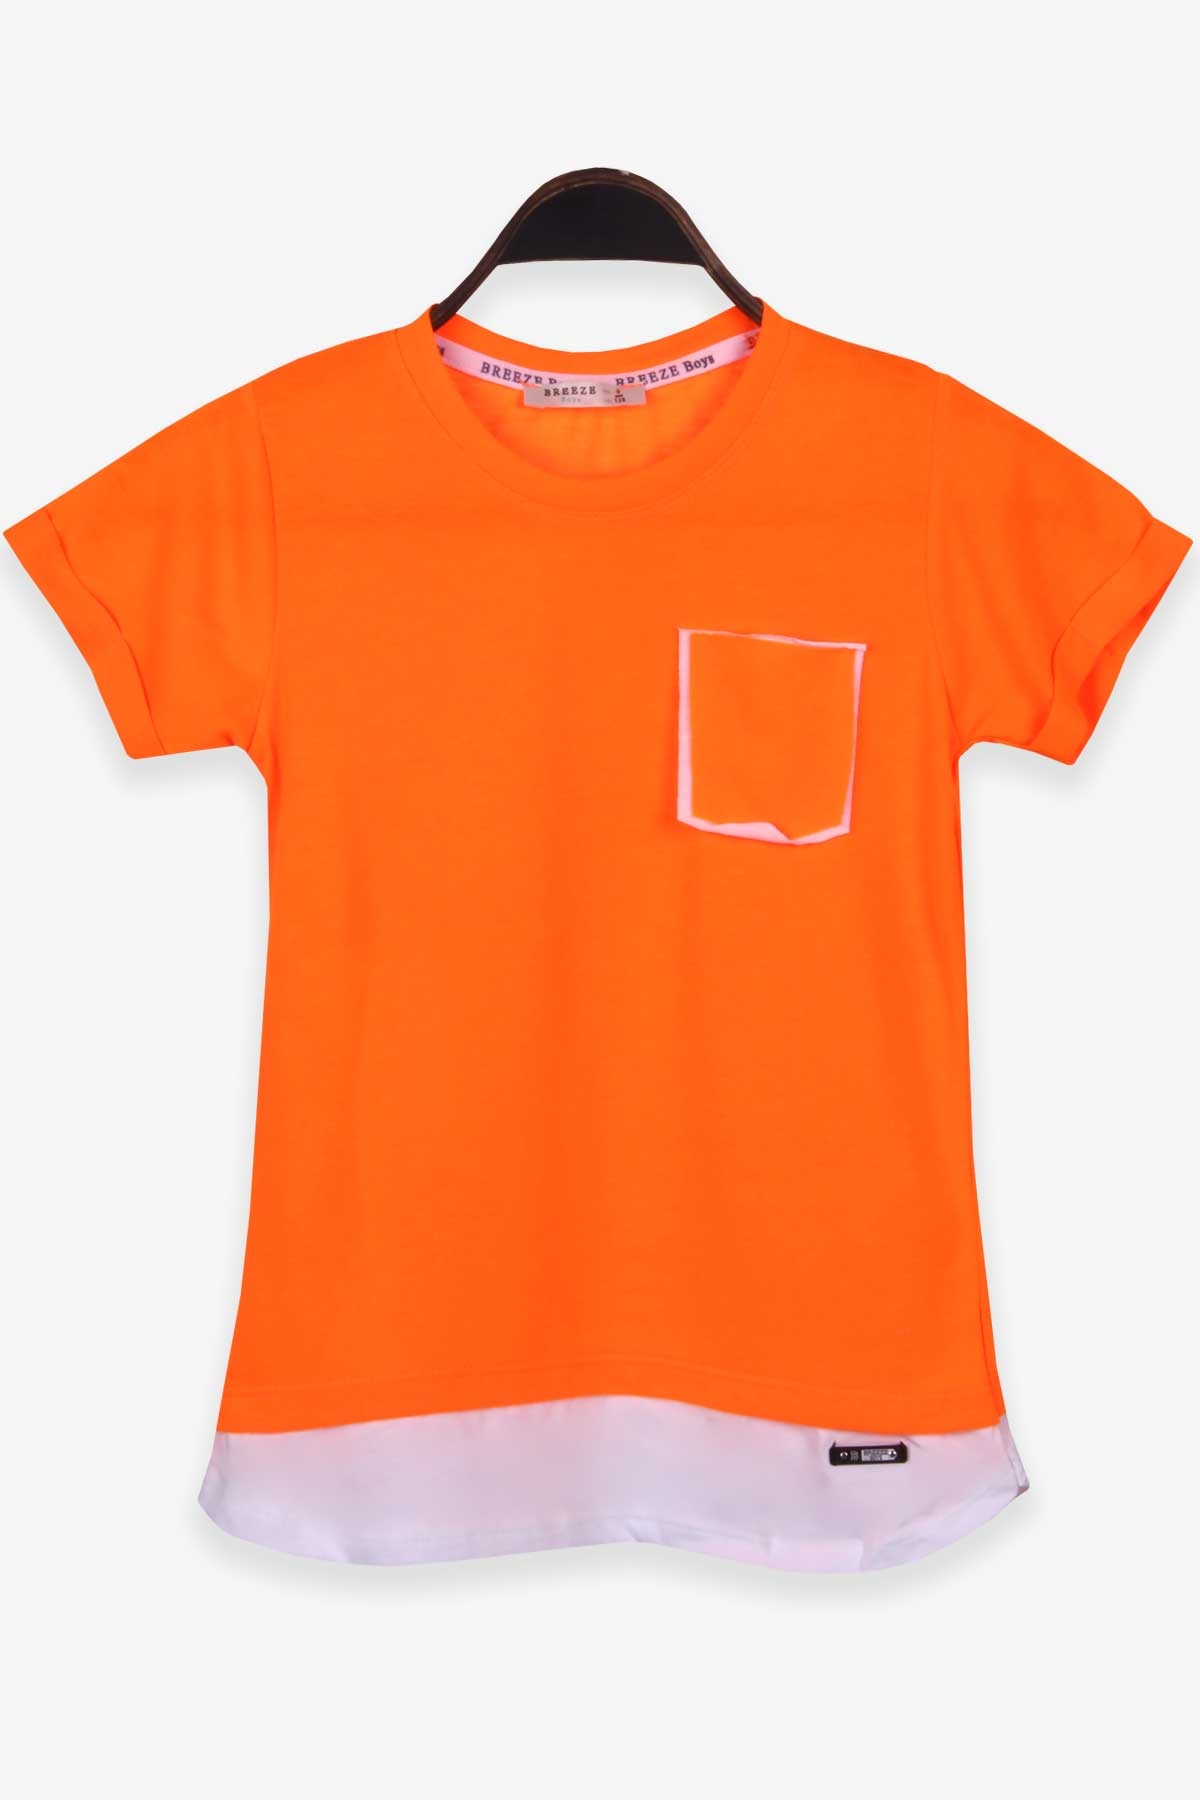 Erkek Çocuk Tişört Basic Neon Turuncu 8-14 Yaş - Breeze